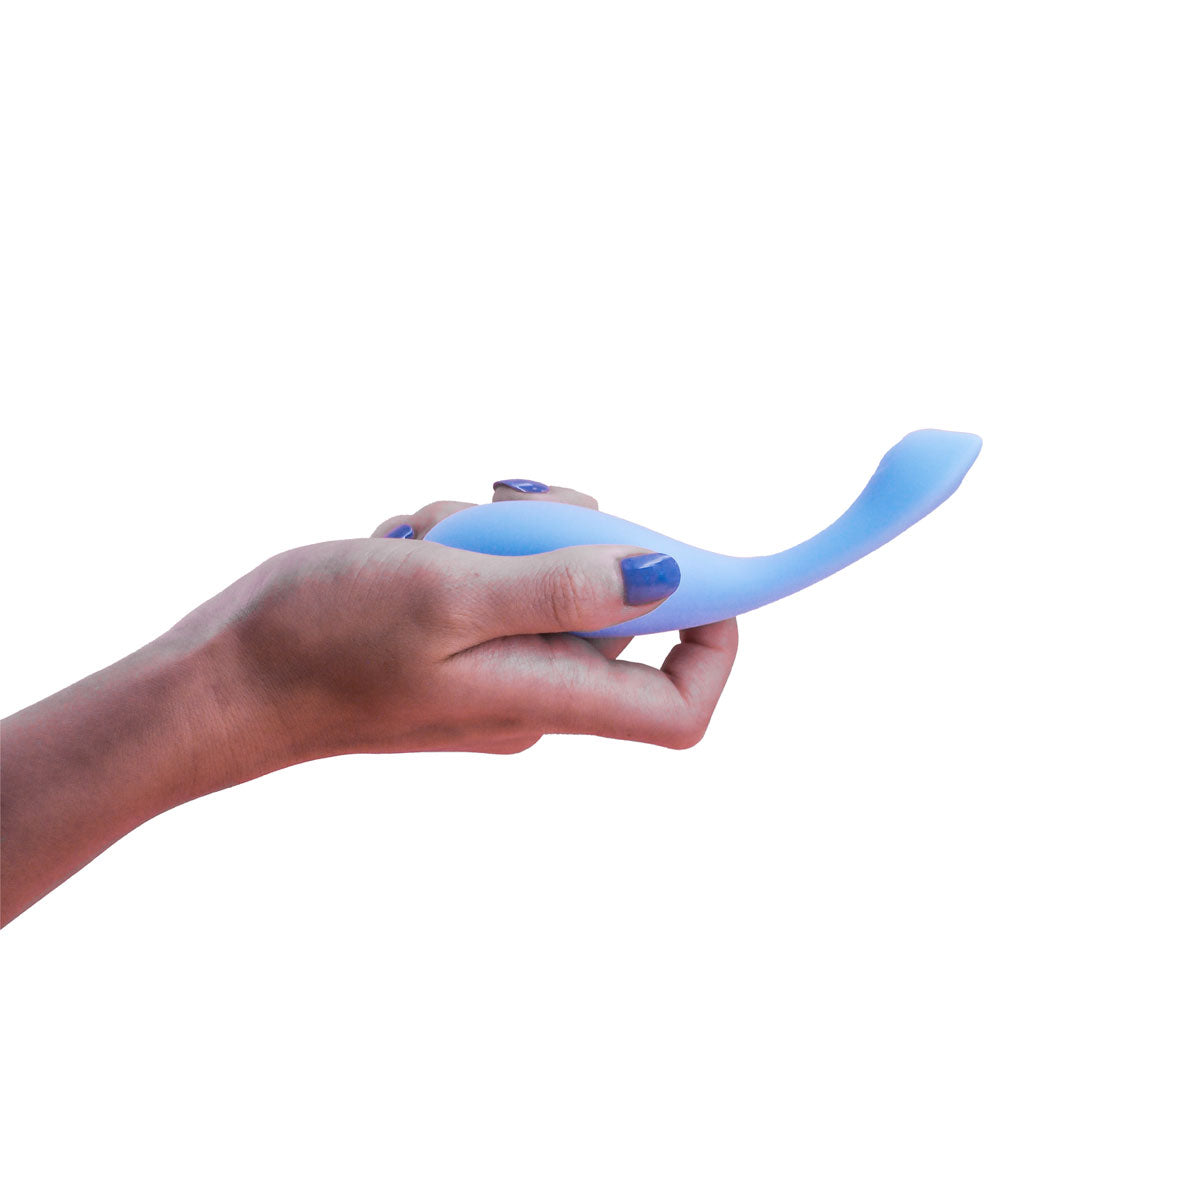 Kit Vaginal & G-Spot Vibrator Blue